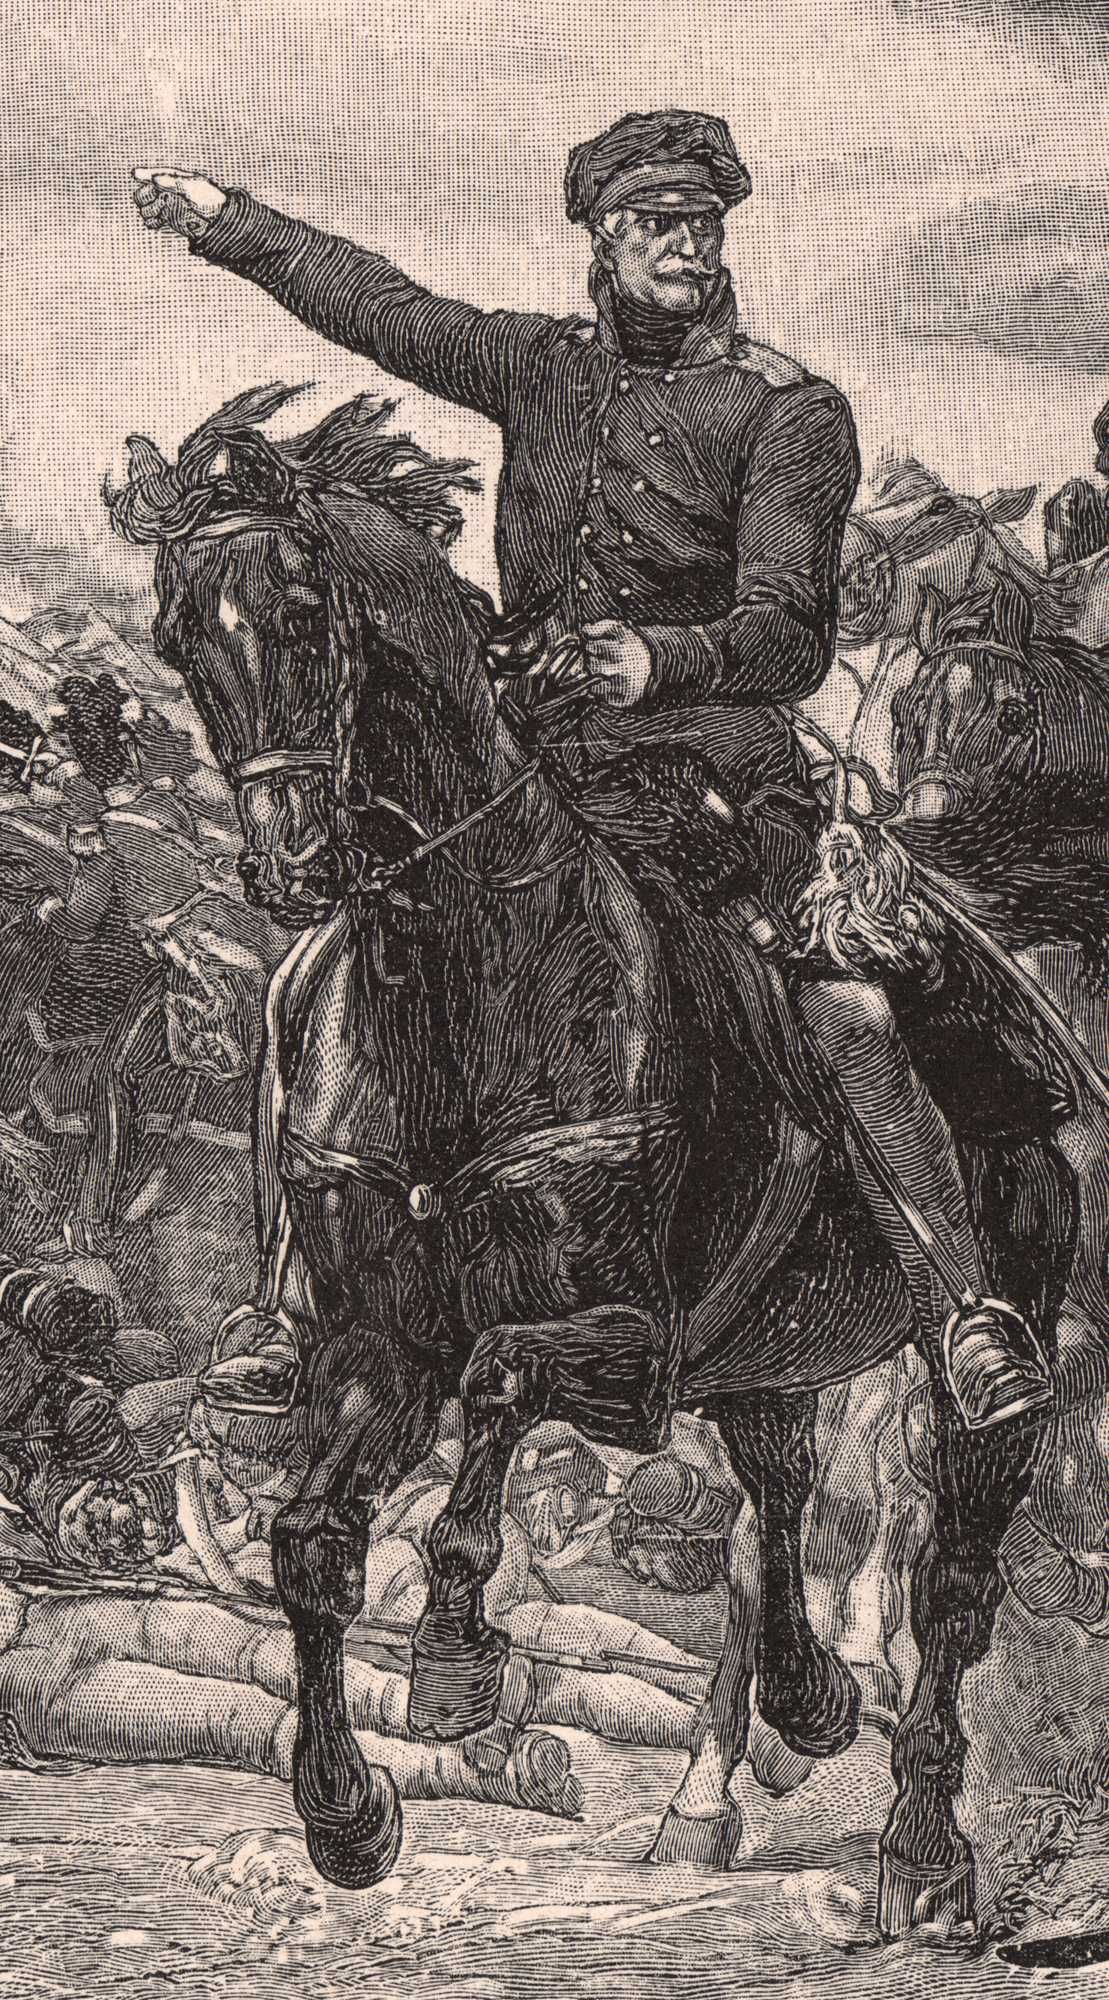 Bitwa pod Waterloo. Drzeworyt ilustracyjny 1895 r. autentyk